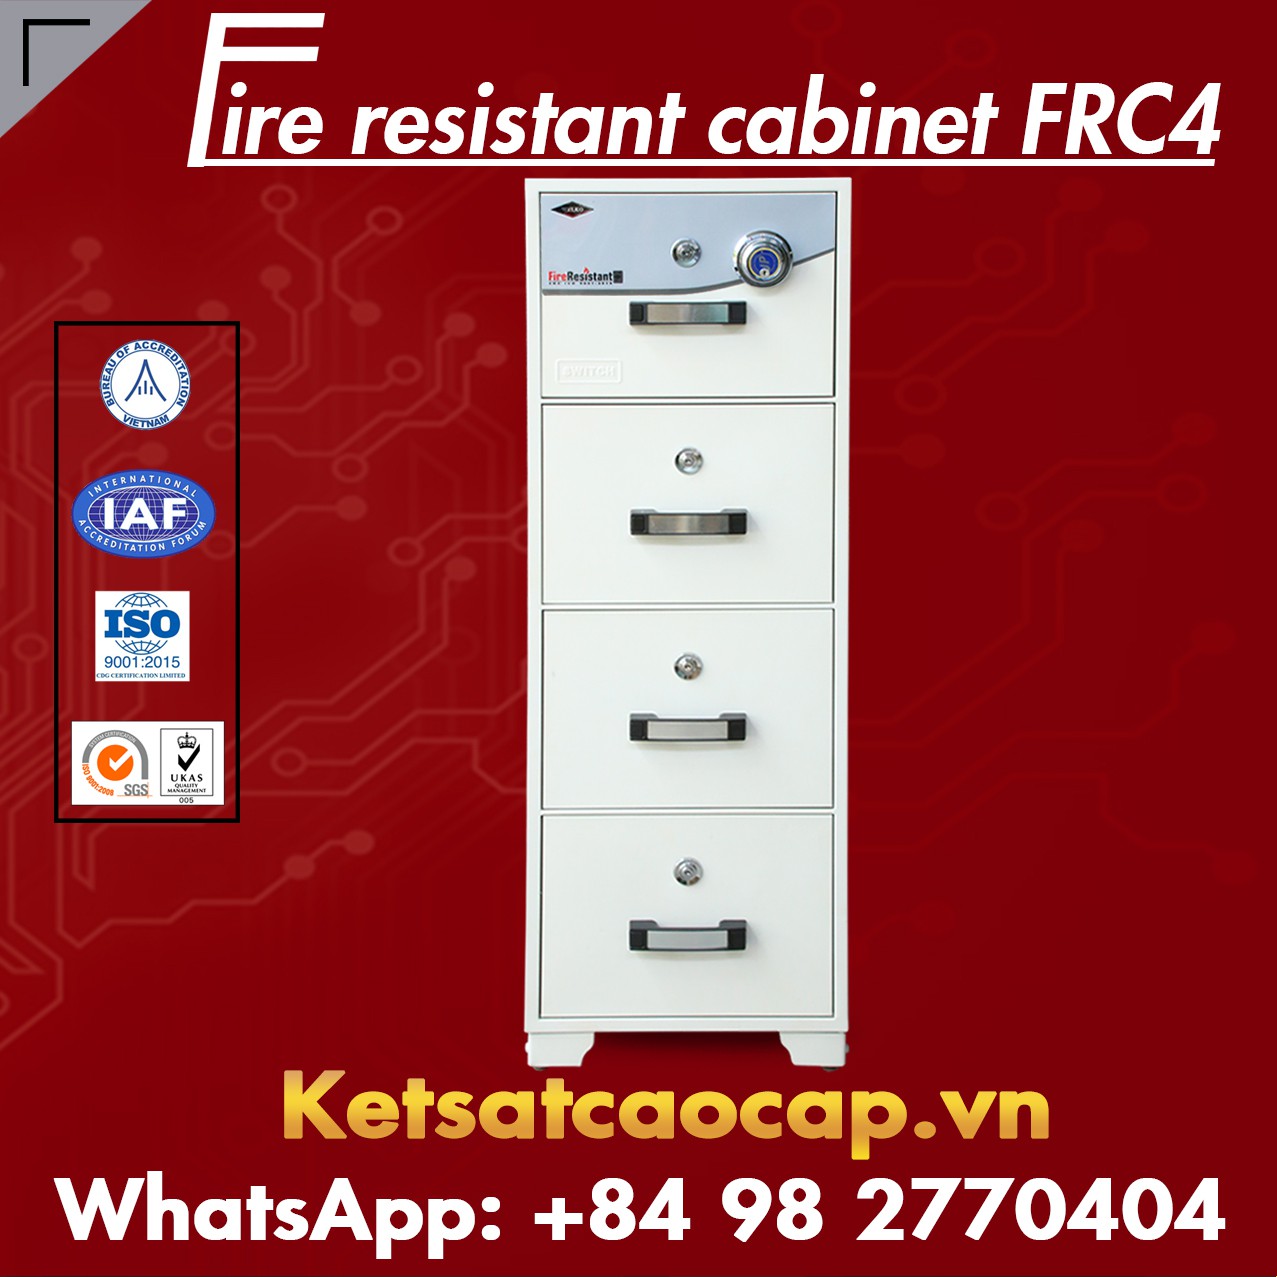 Tủ Sắt Chống Cháy FRC2